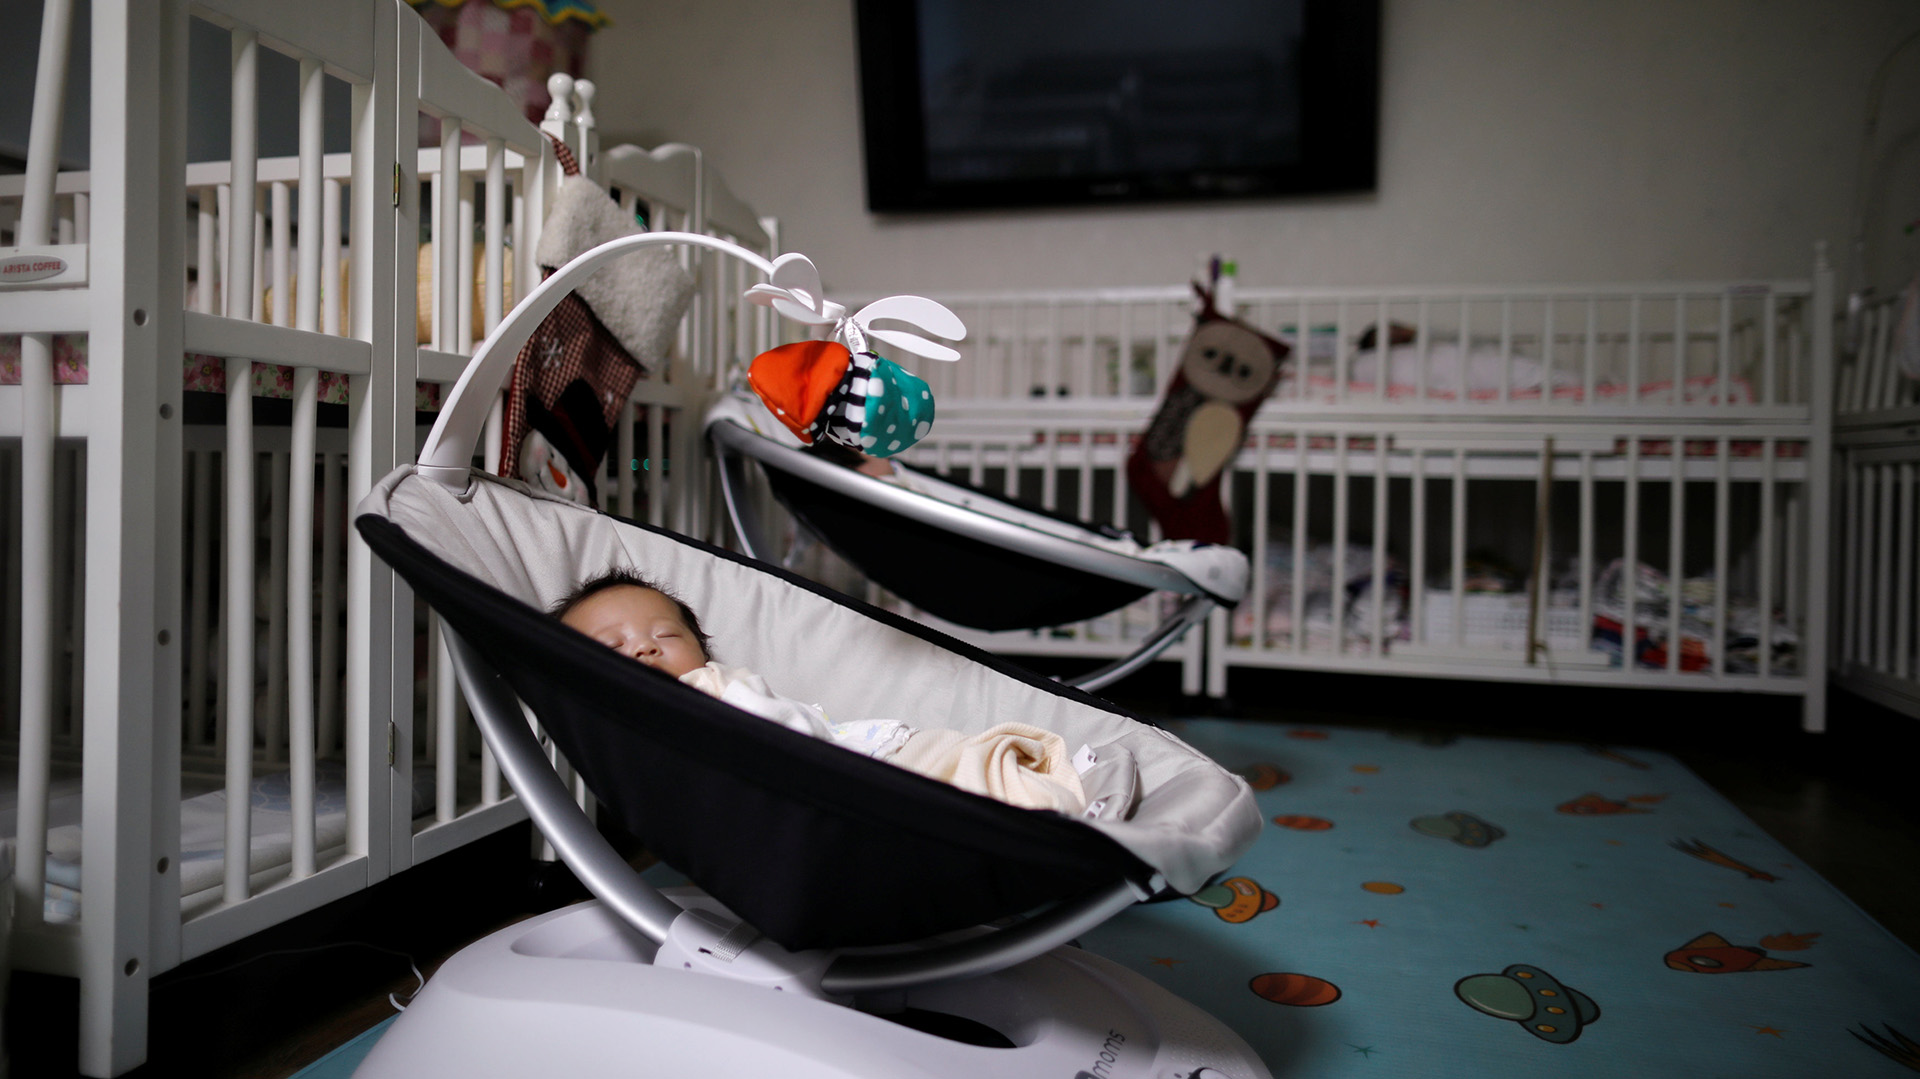 Corea del Sur registró más muertes que nacimientos en 2022 y volvió a caer la tasa de fertilidad